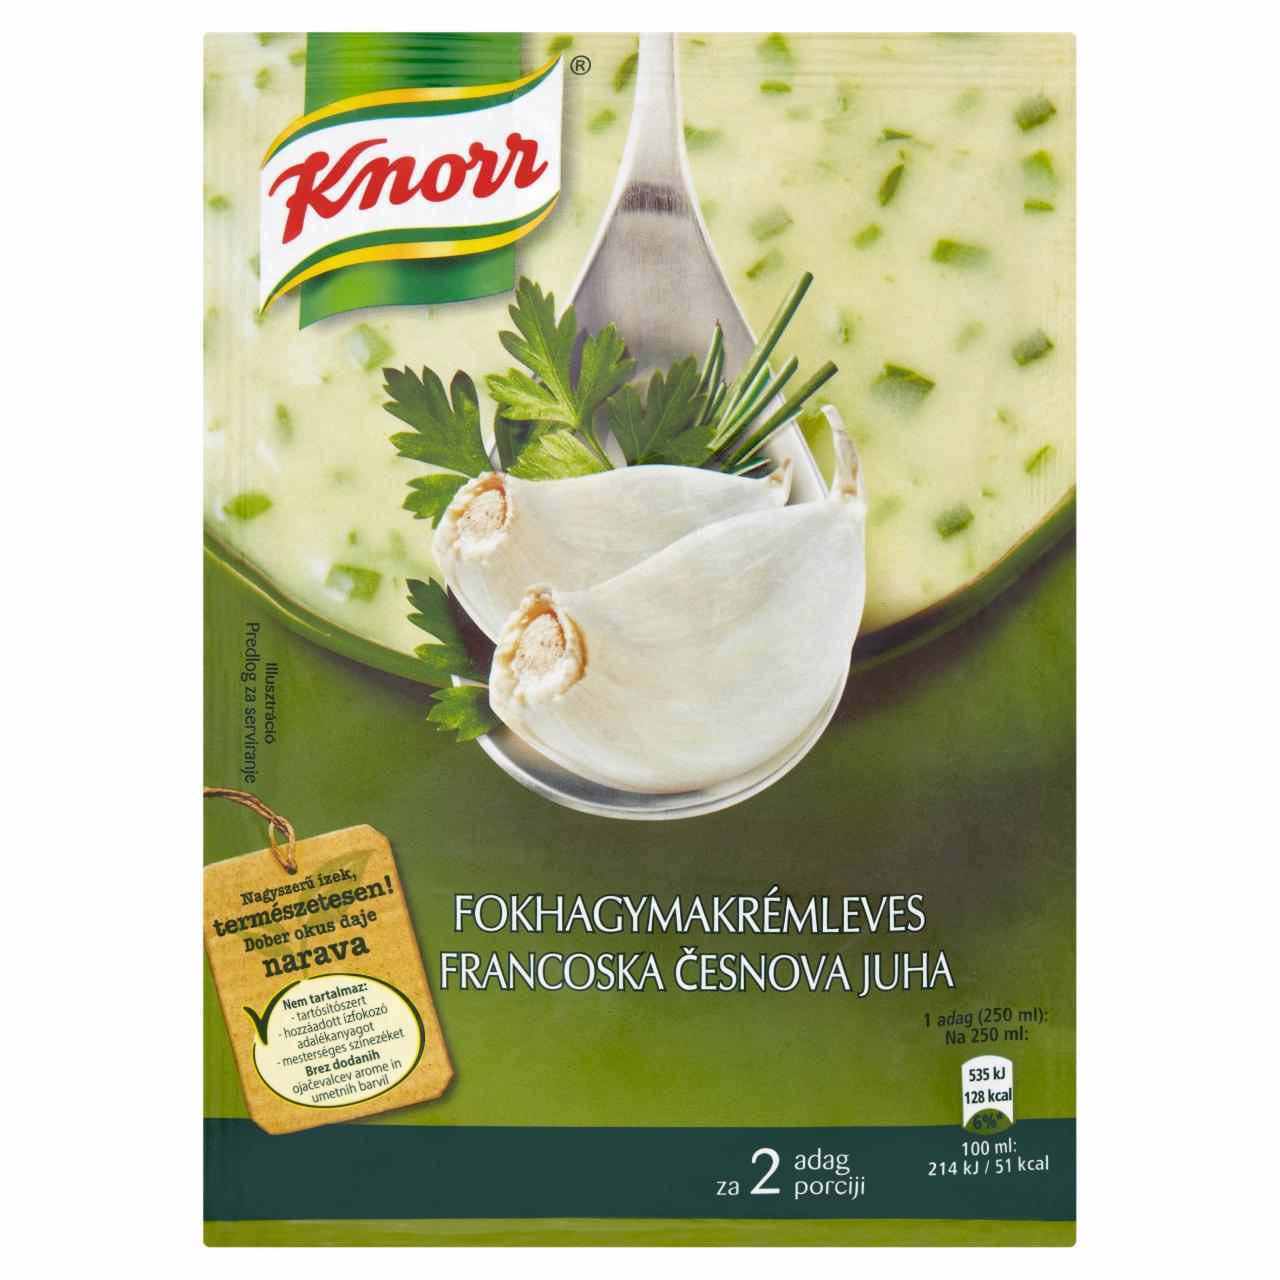 Képek - Fokhagymakrémleves Knorr